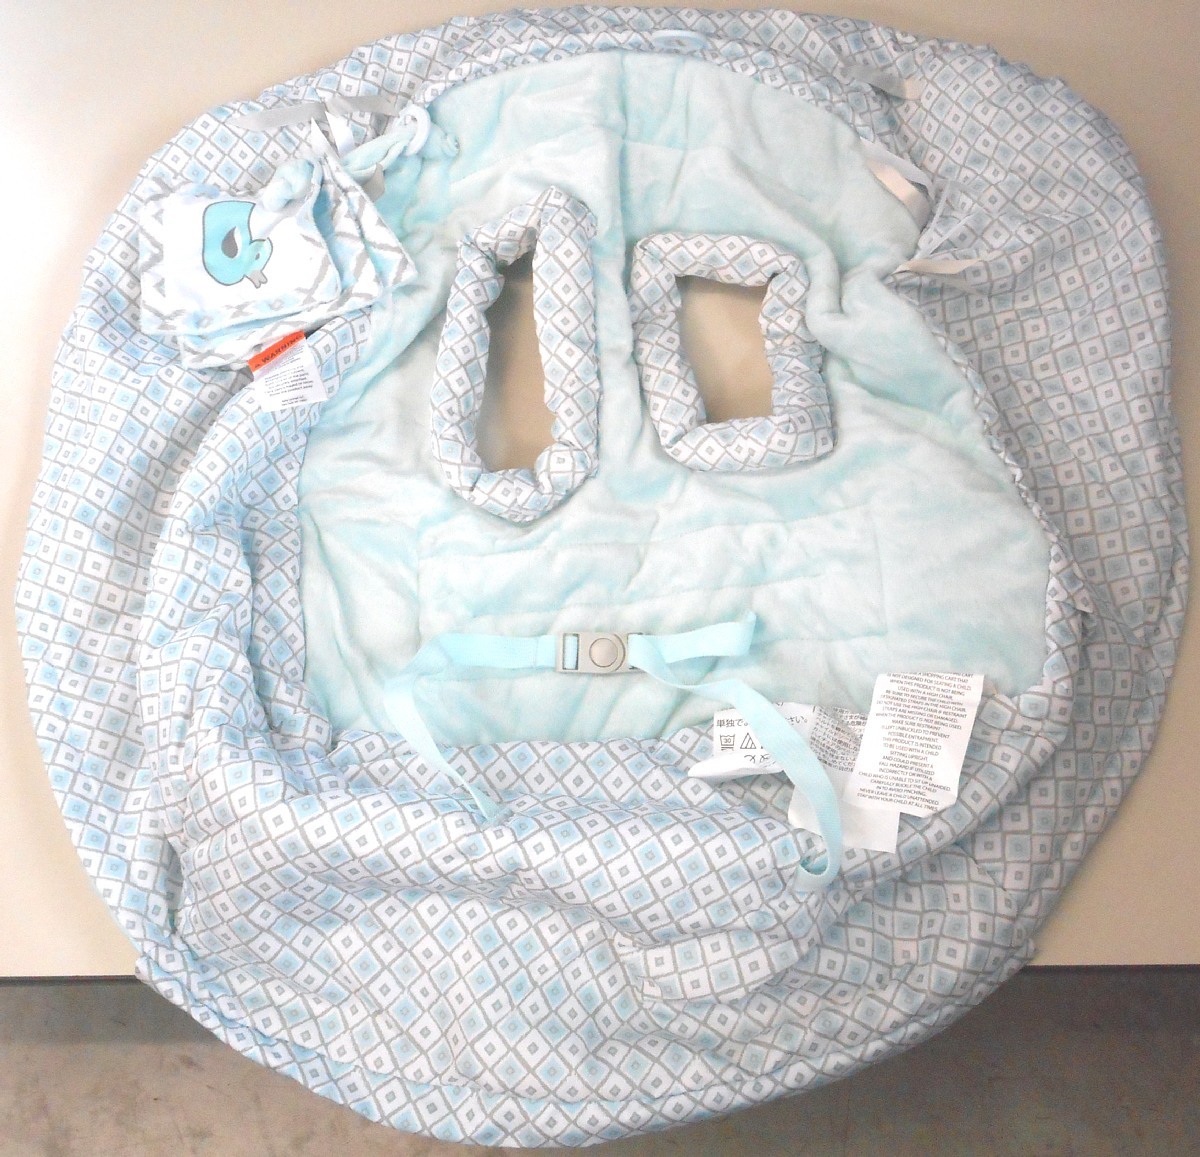  новый товар BABY LOUNGE Luxe Cart покрытие протектор младенец для малышей 6. месяц ~4 лет 15kg до покупка Cart высокий стул - и т.п. 3